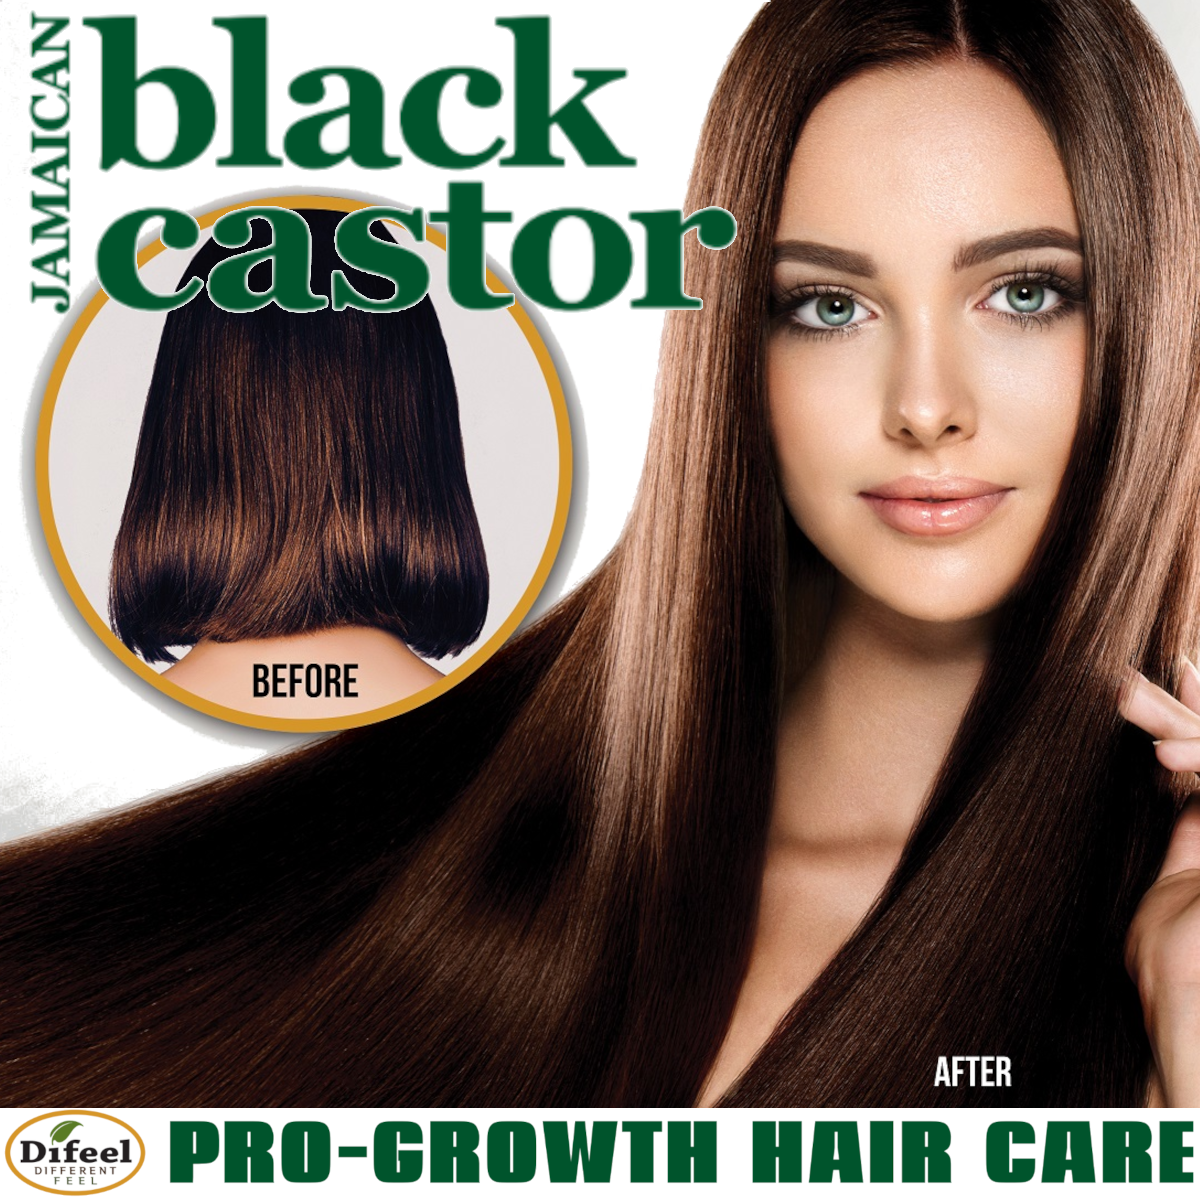 Difeel Superior Growth Jamaican Black Castor Oil Hair Mask 12 oz.